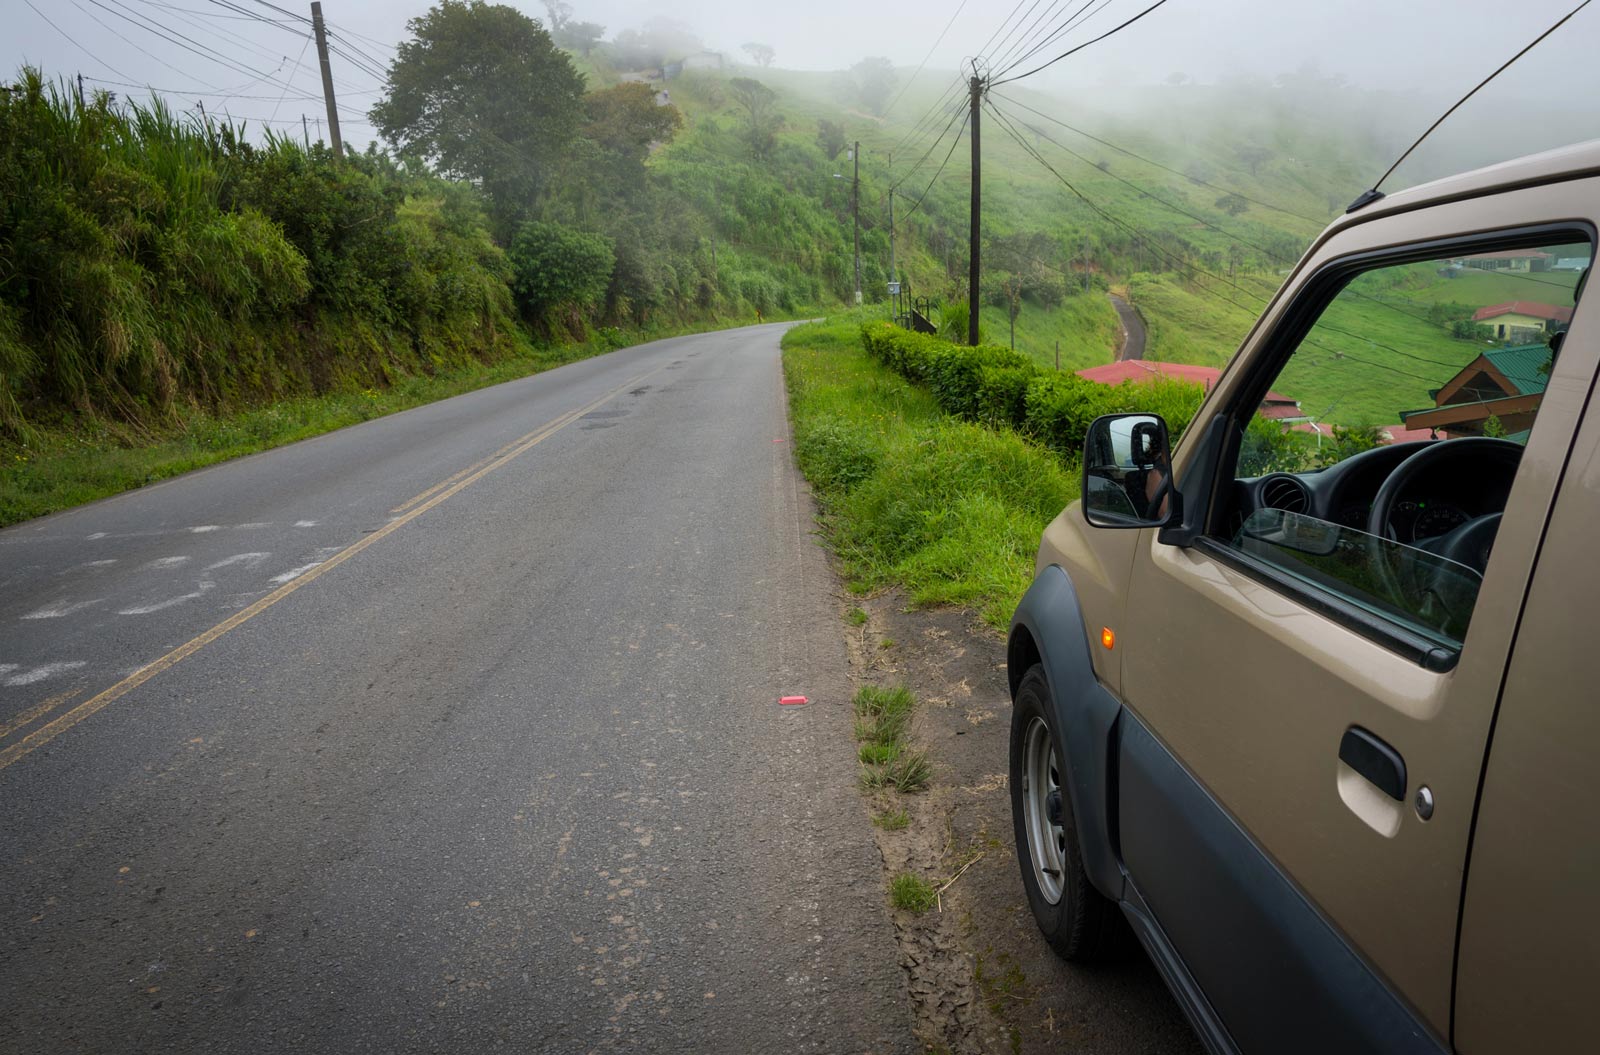 Car Rental costs in Costa Rica